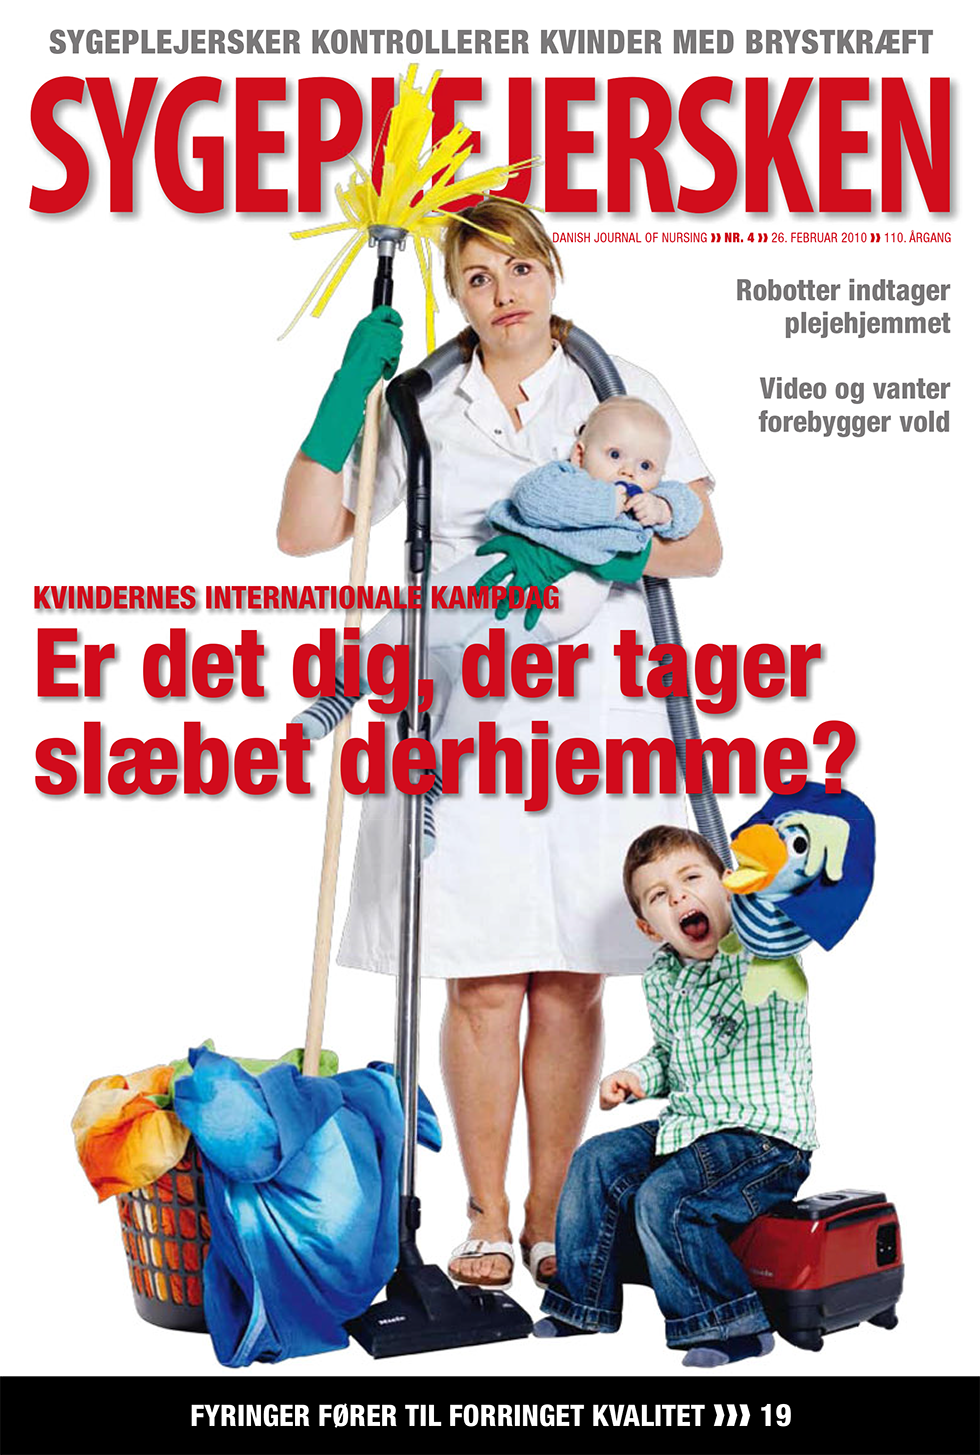 Sygeplejersken_2010_04 - magasinforsiden